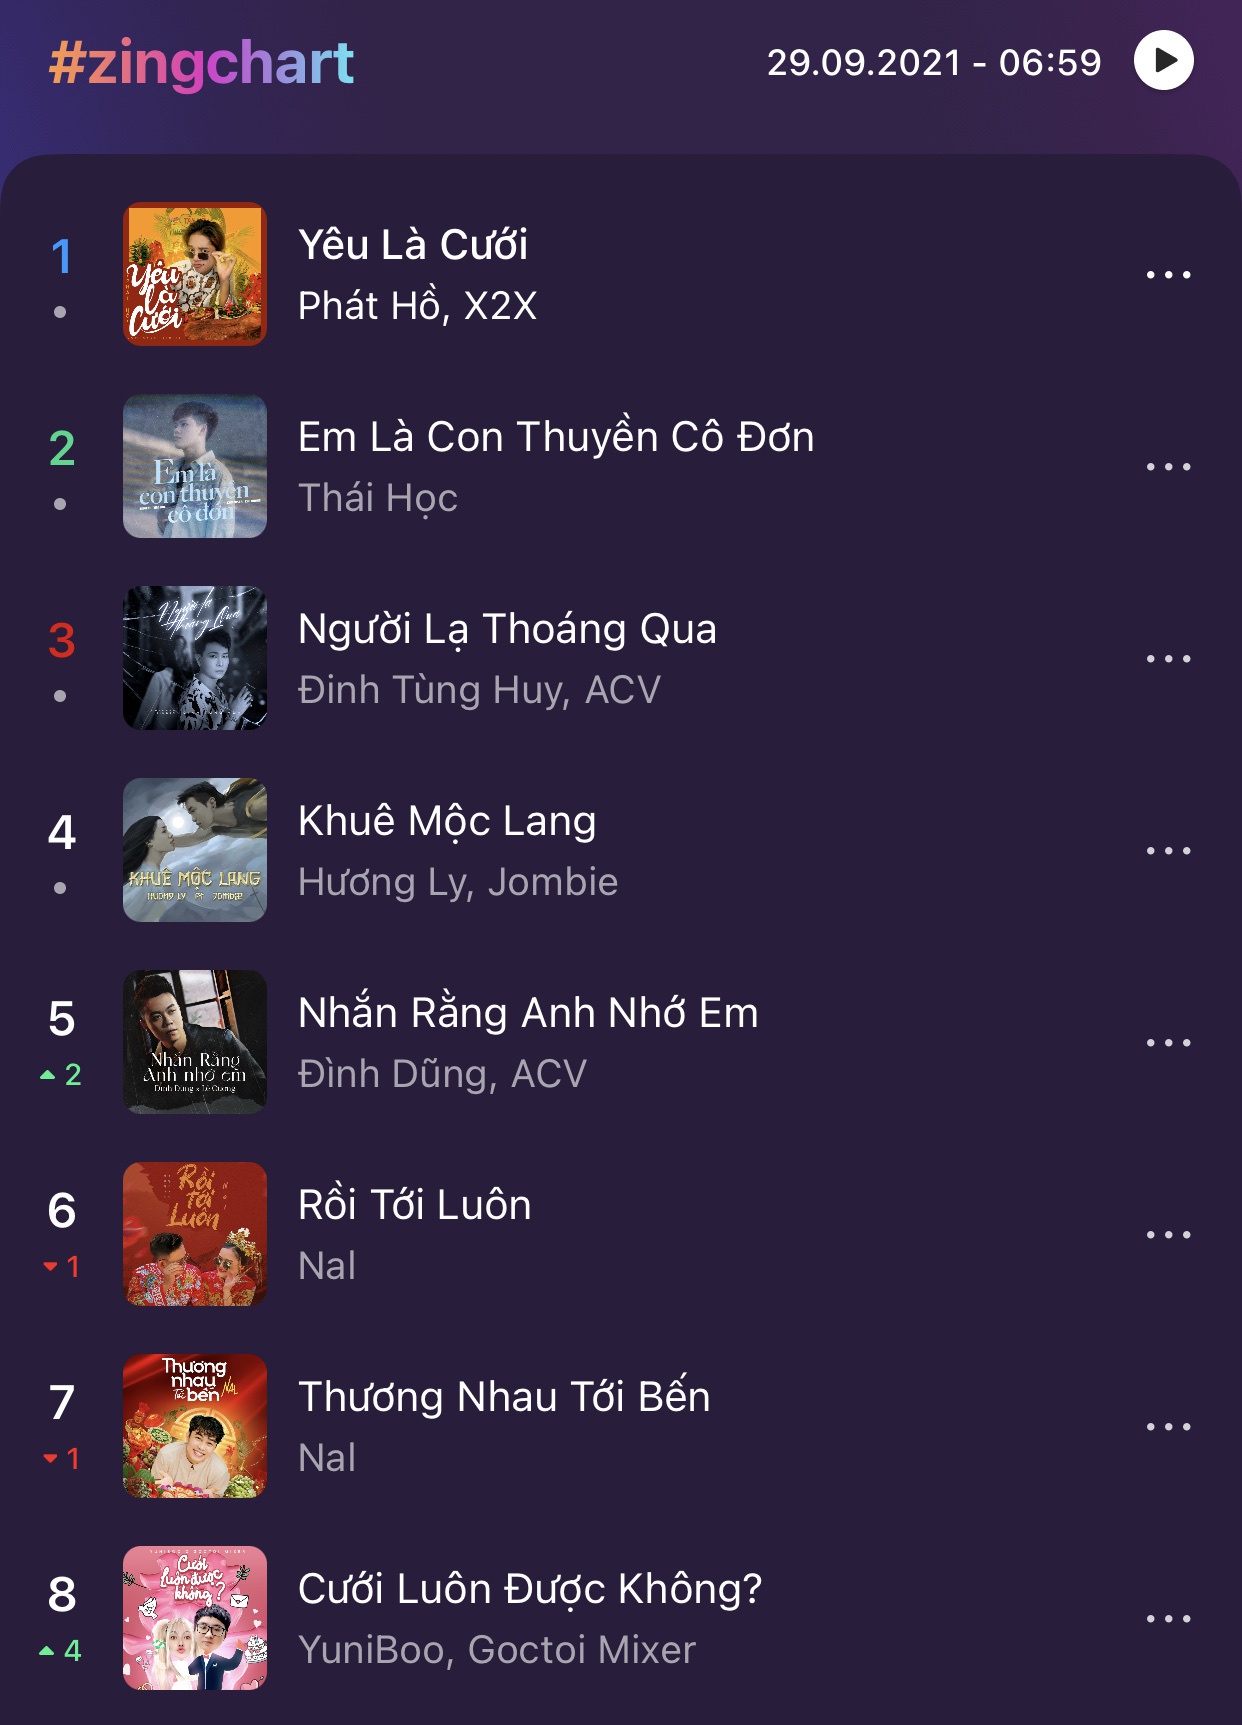 Ca Khúc Đám Cưới Của Nữ Rapper Vượt Loạt Bài Hit Vpop - Nhạc Việt - Việt  Giải Trí